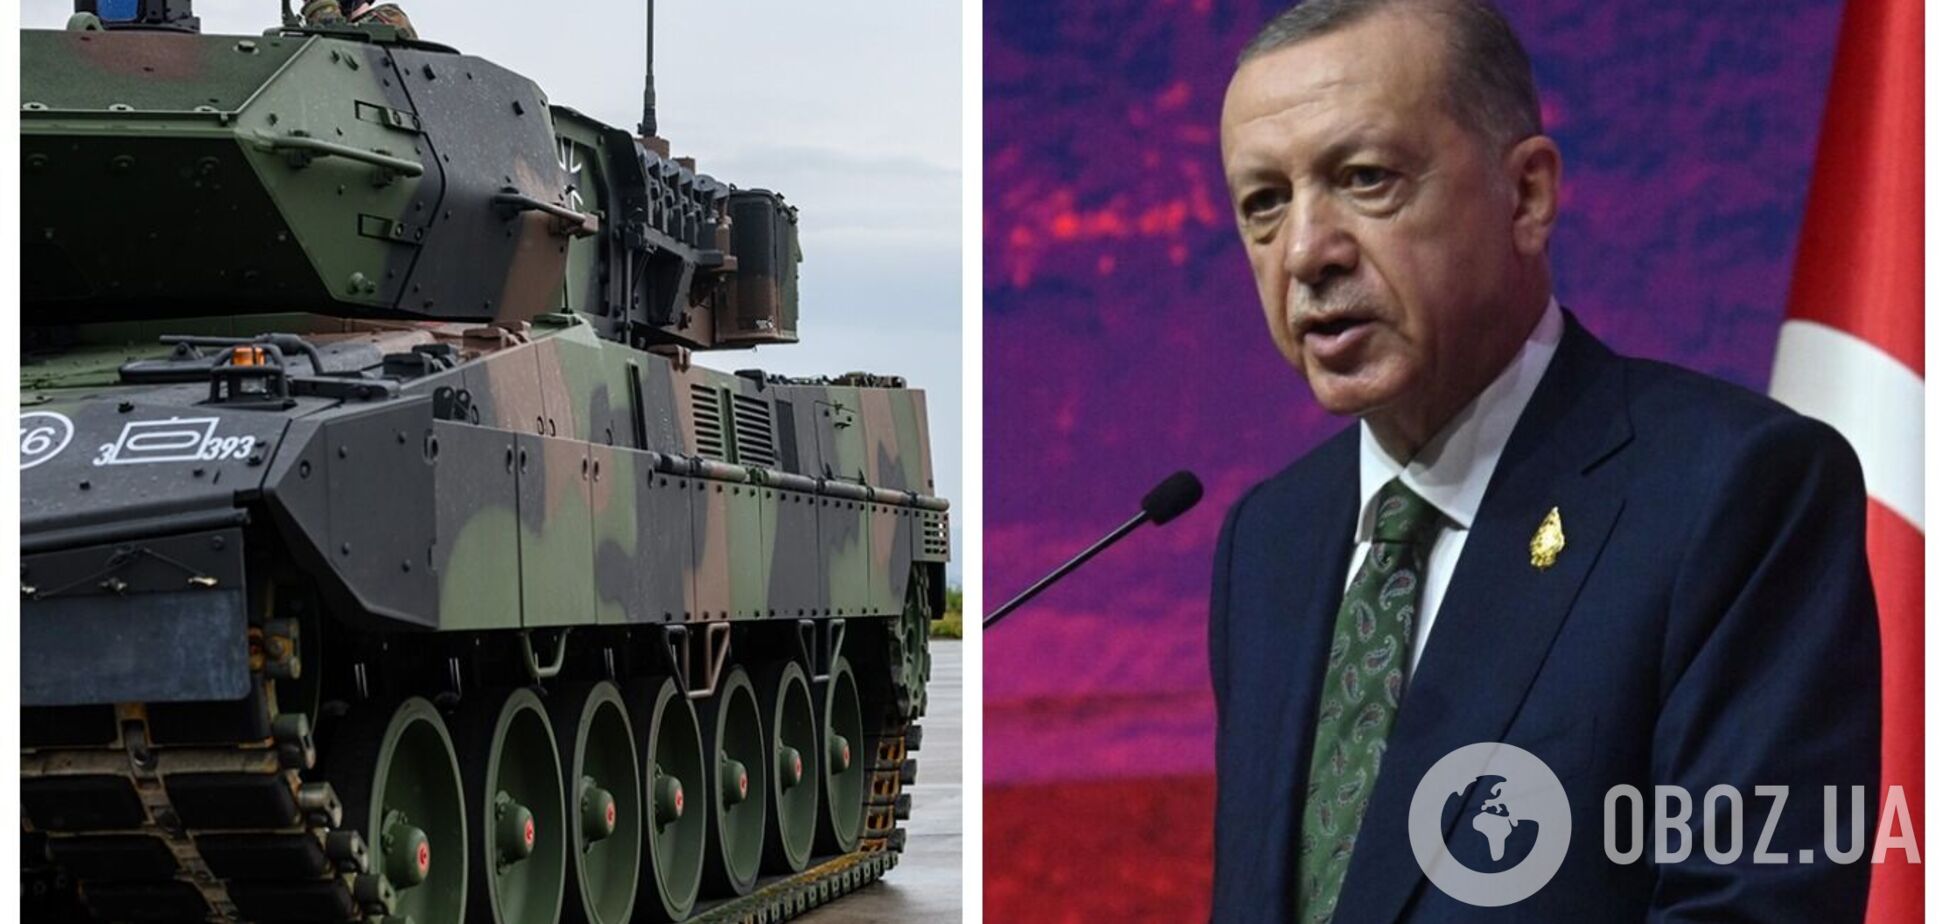 'Йде на користь торговцям зброєю': Ердоган назвав 'ризикованим' рішення Заходу передати танки Україні